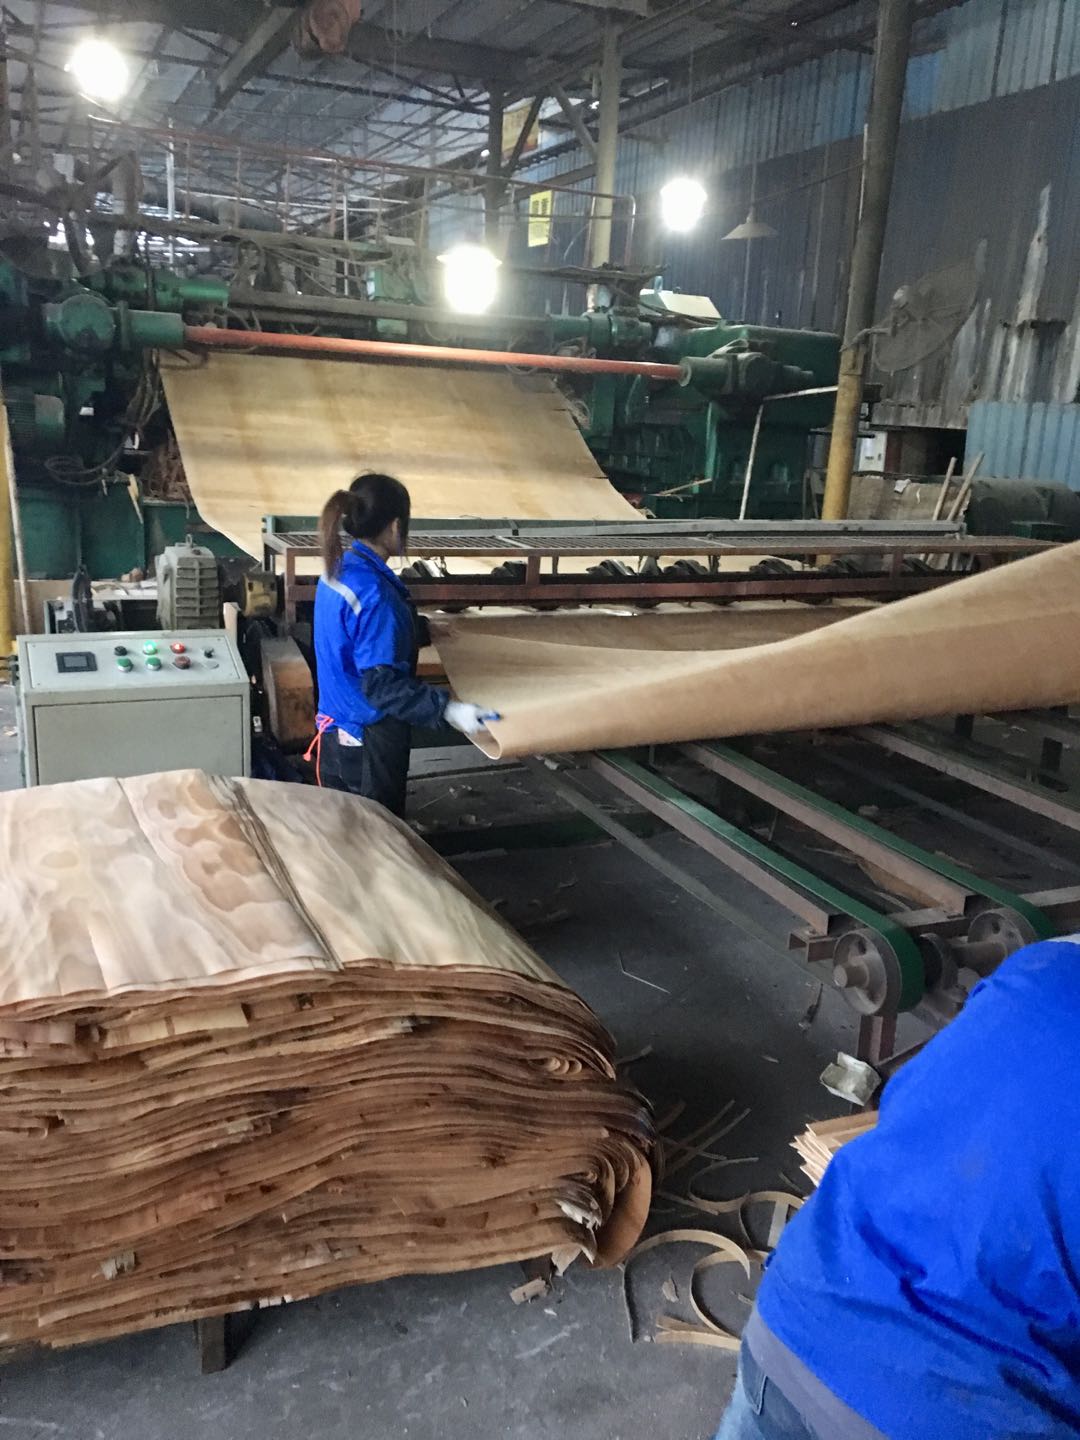 佛山吉盛唐朝木业十三年专注高性能胶合板供应商和应用解决方案服务商